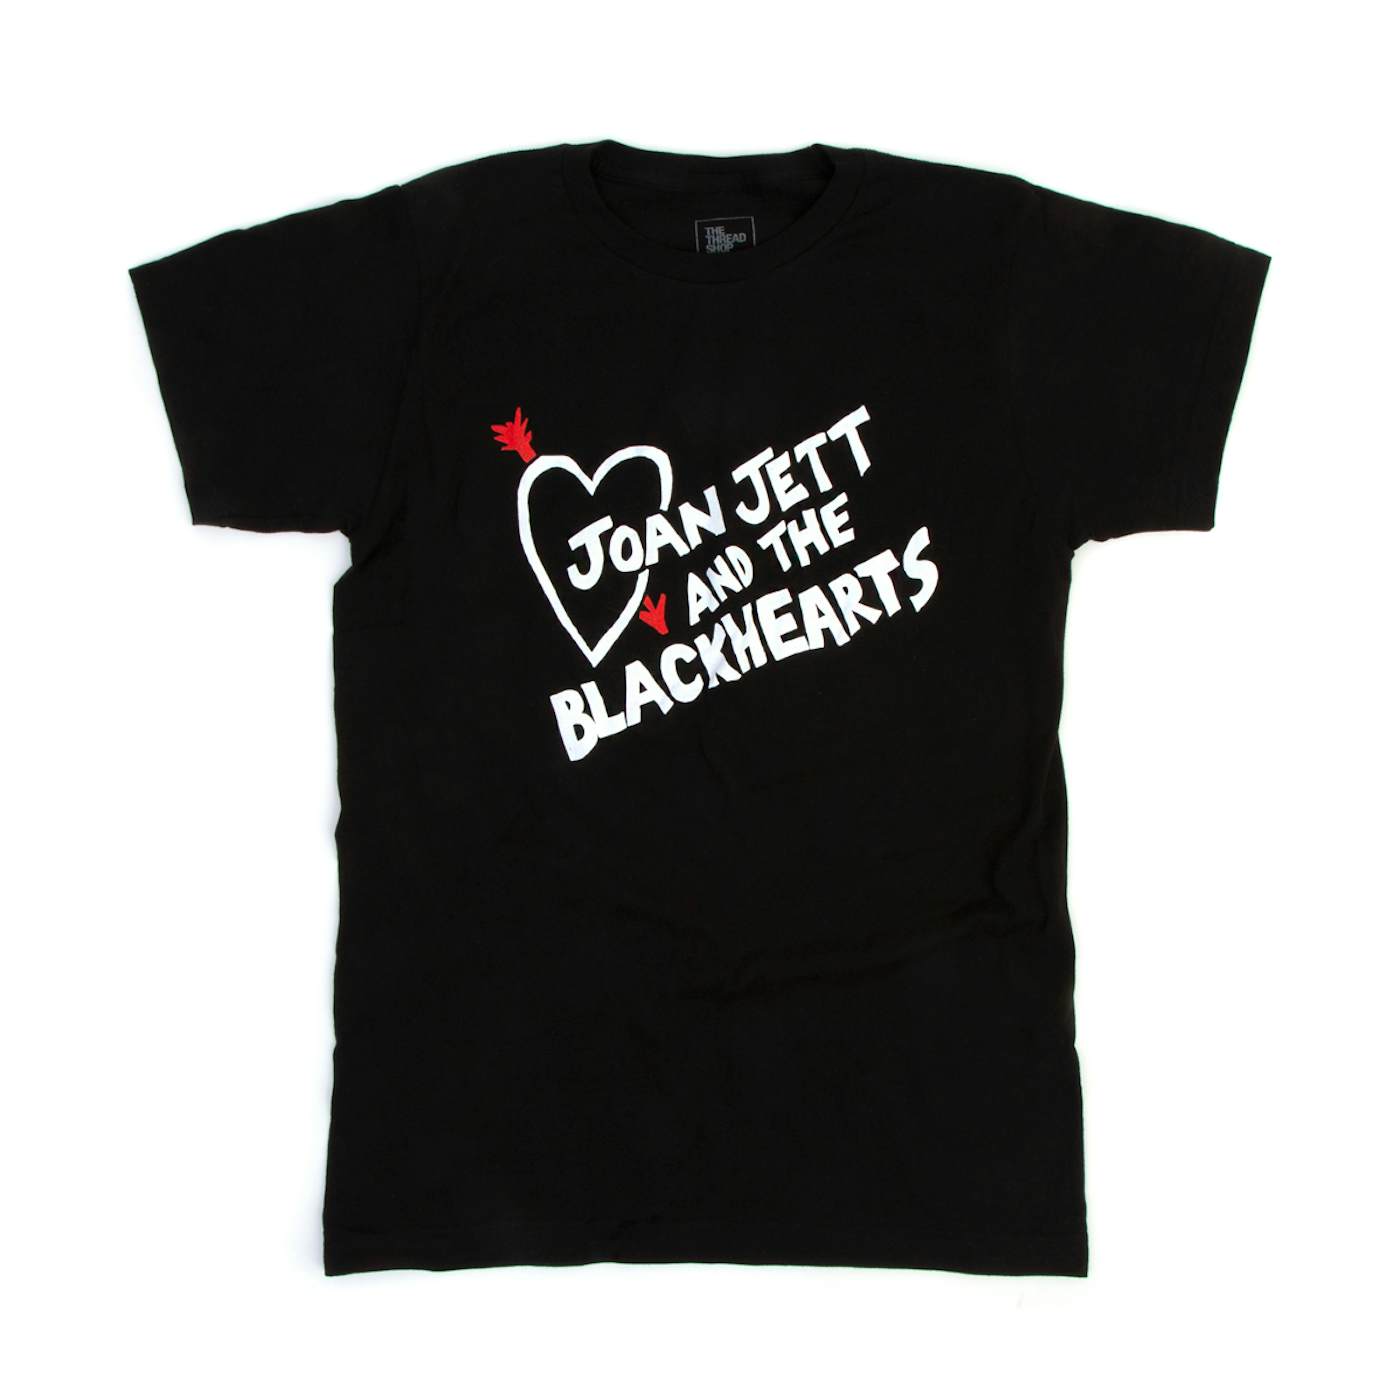 Joan Jett & The Blackhearts Fall 2019 Tour T-Shirt